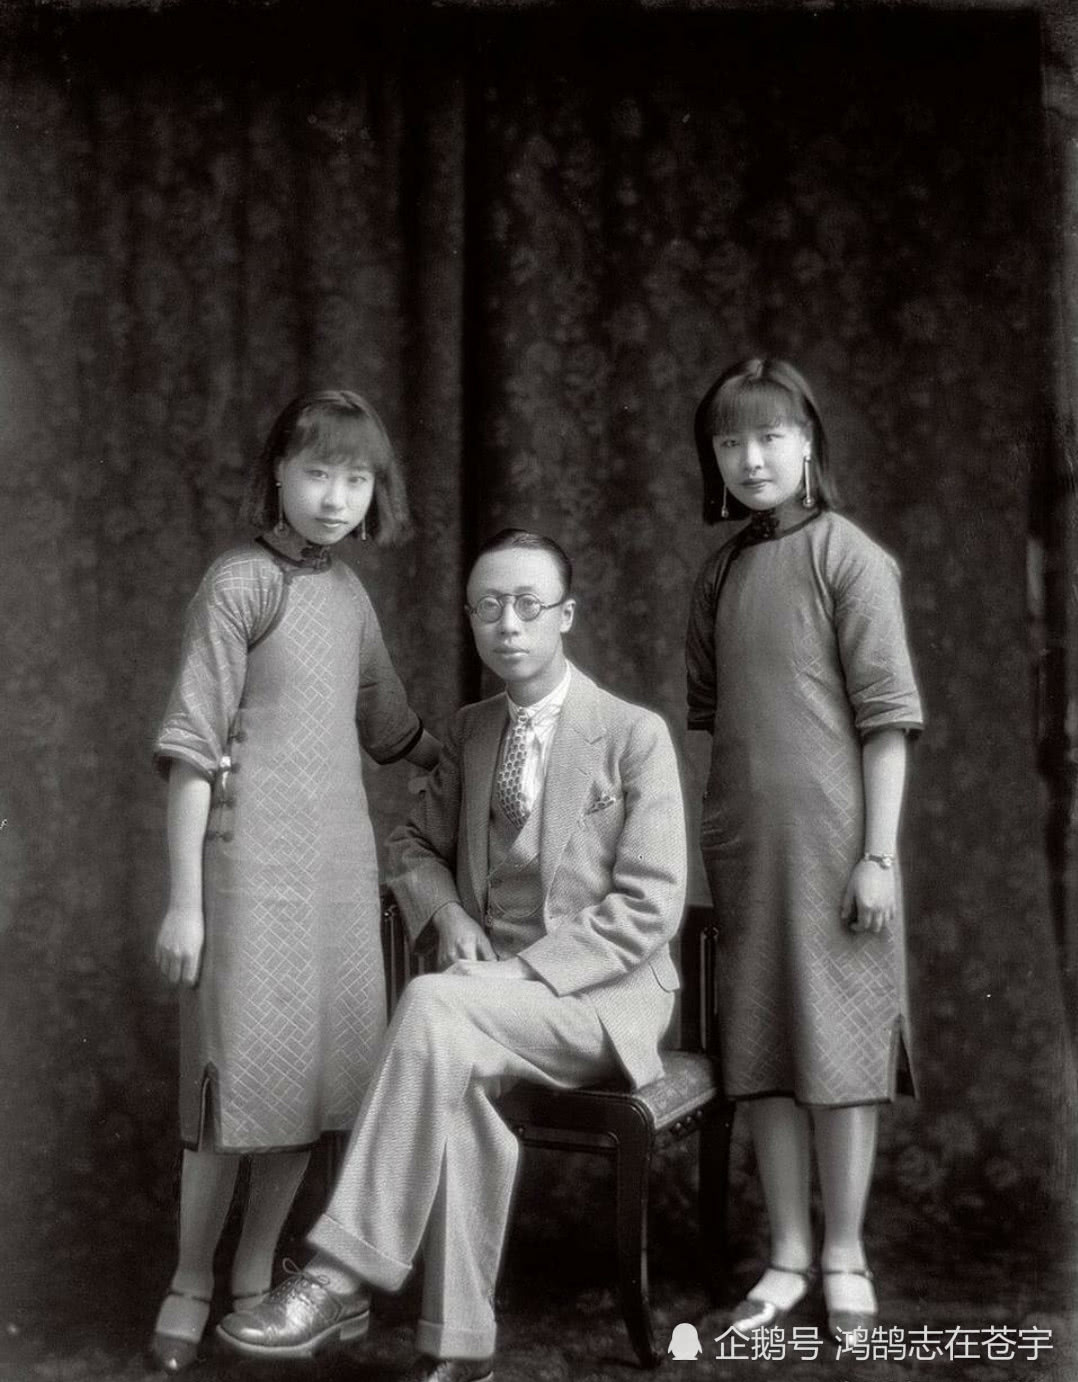 末代皇帝溥仪绝版照片,图2身边站着两位绝色佳人,图4